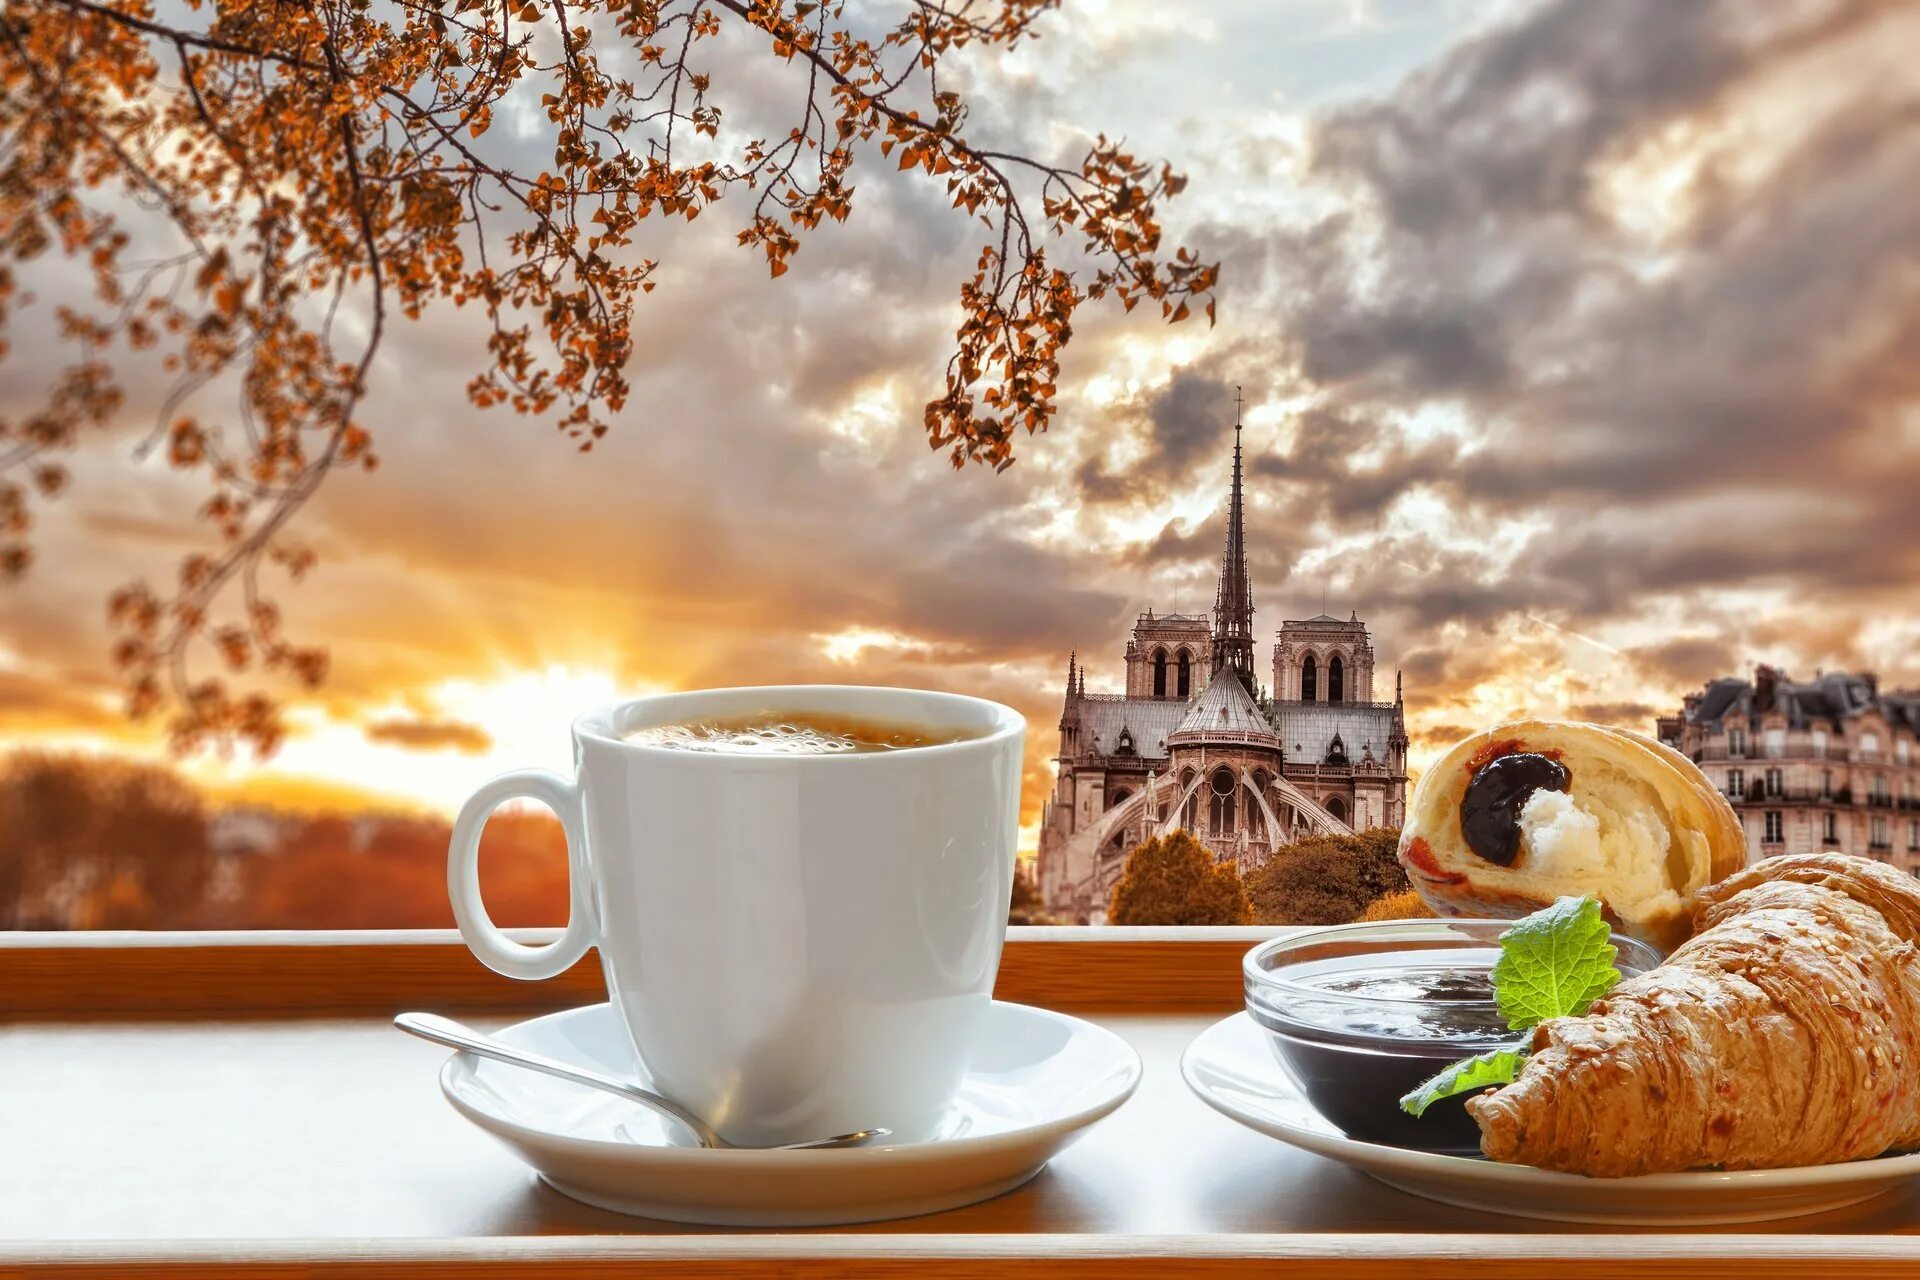 Это было красивое утро. Чашка утреннего кофе. С добрым утром. Доброго утра и хорошеготнастроения.